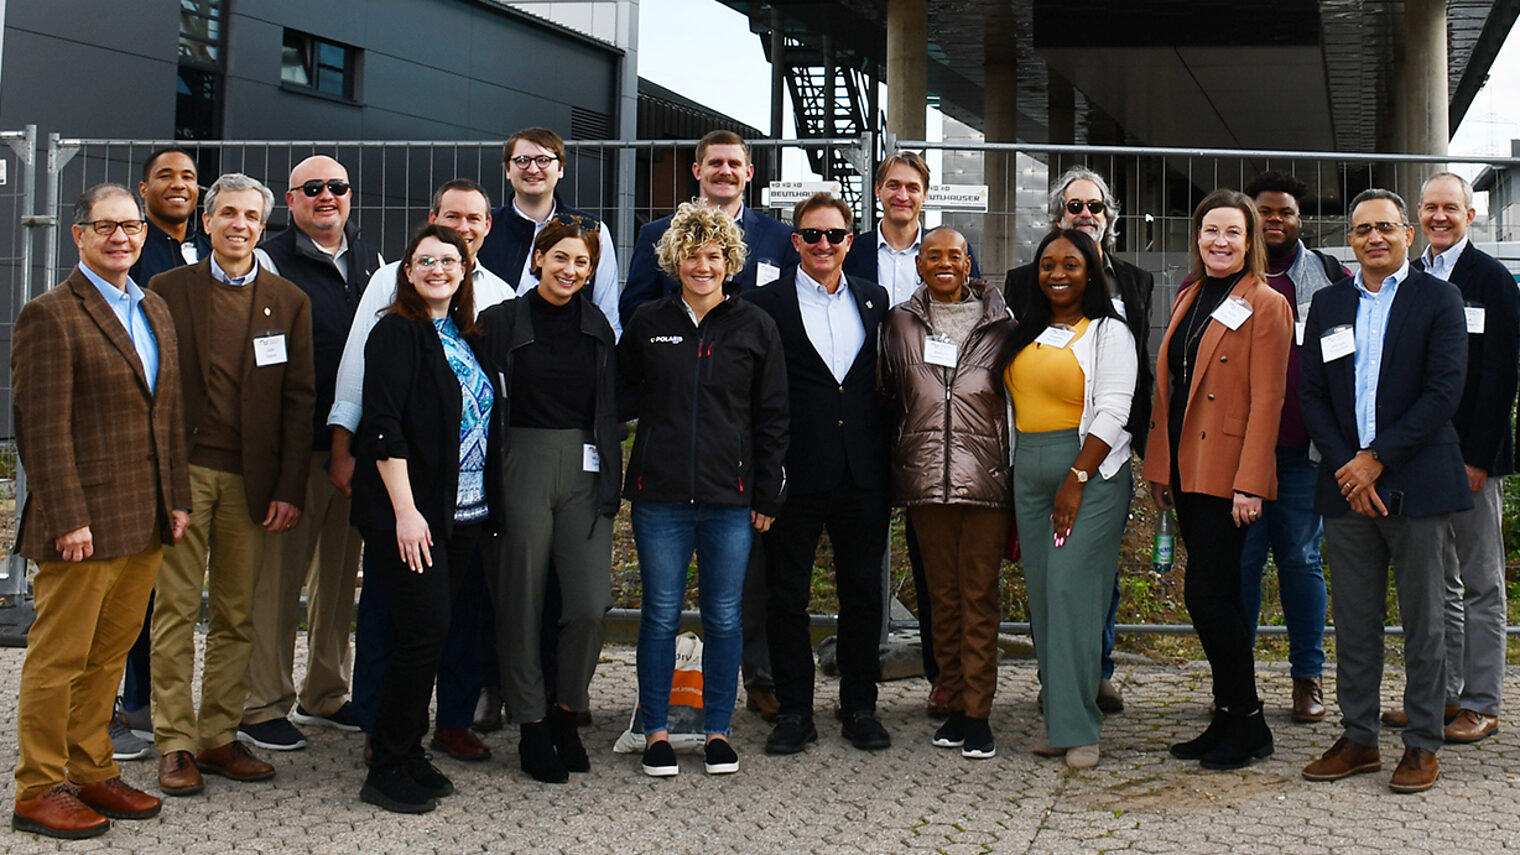 Die Delegation von Ausbildungsbeauftragten aus den USA vor den HwK-Bildungszentren in der August-Horch-Straße.